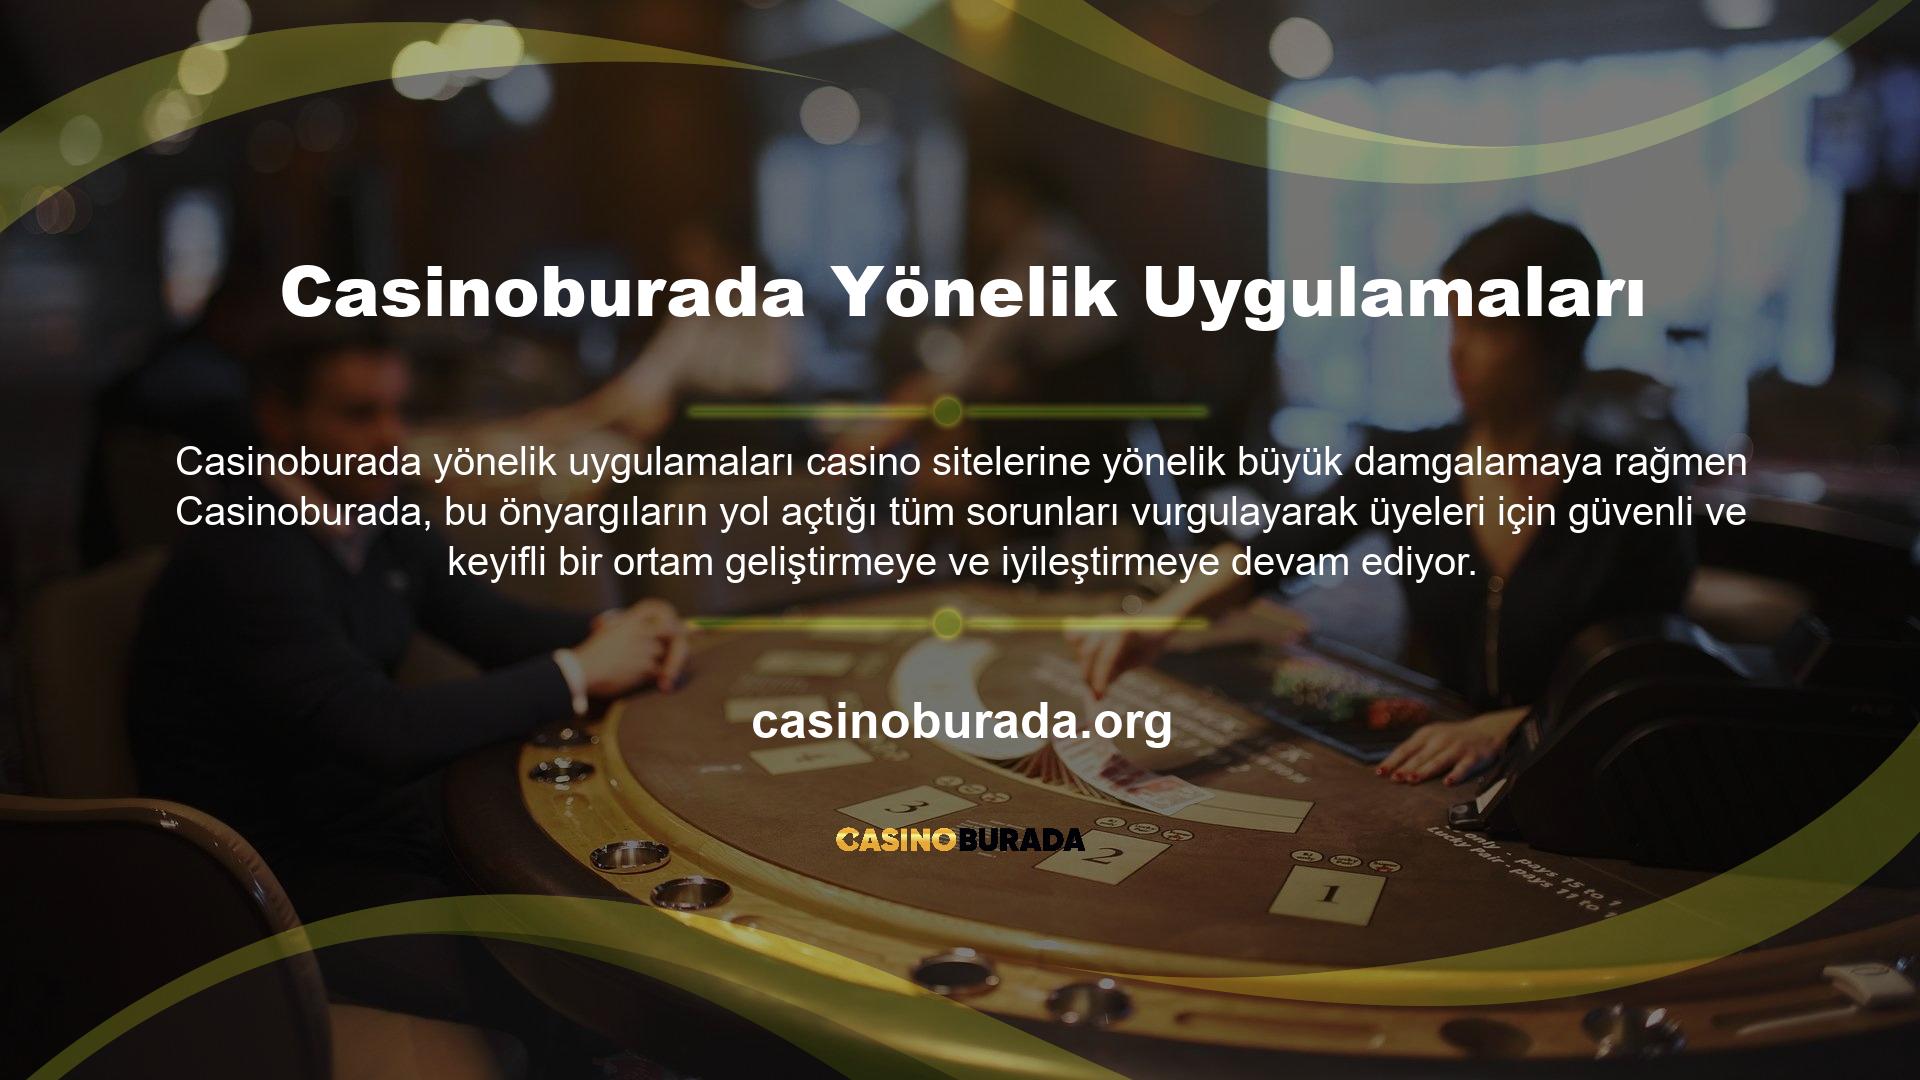 Geniş bir potansiyel müşteri yelpazesine sahip olan Casinoburada, Türkiye pazarında spor bahislerinin yanı sıra casino ve poker ürün hizmetleri de sunmaktadır